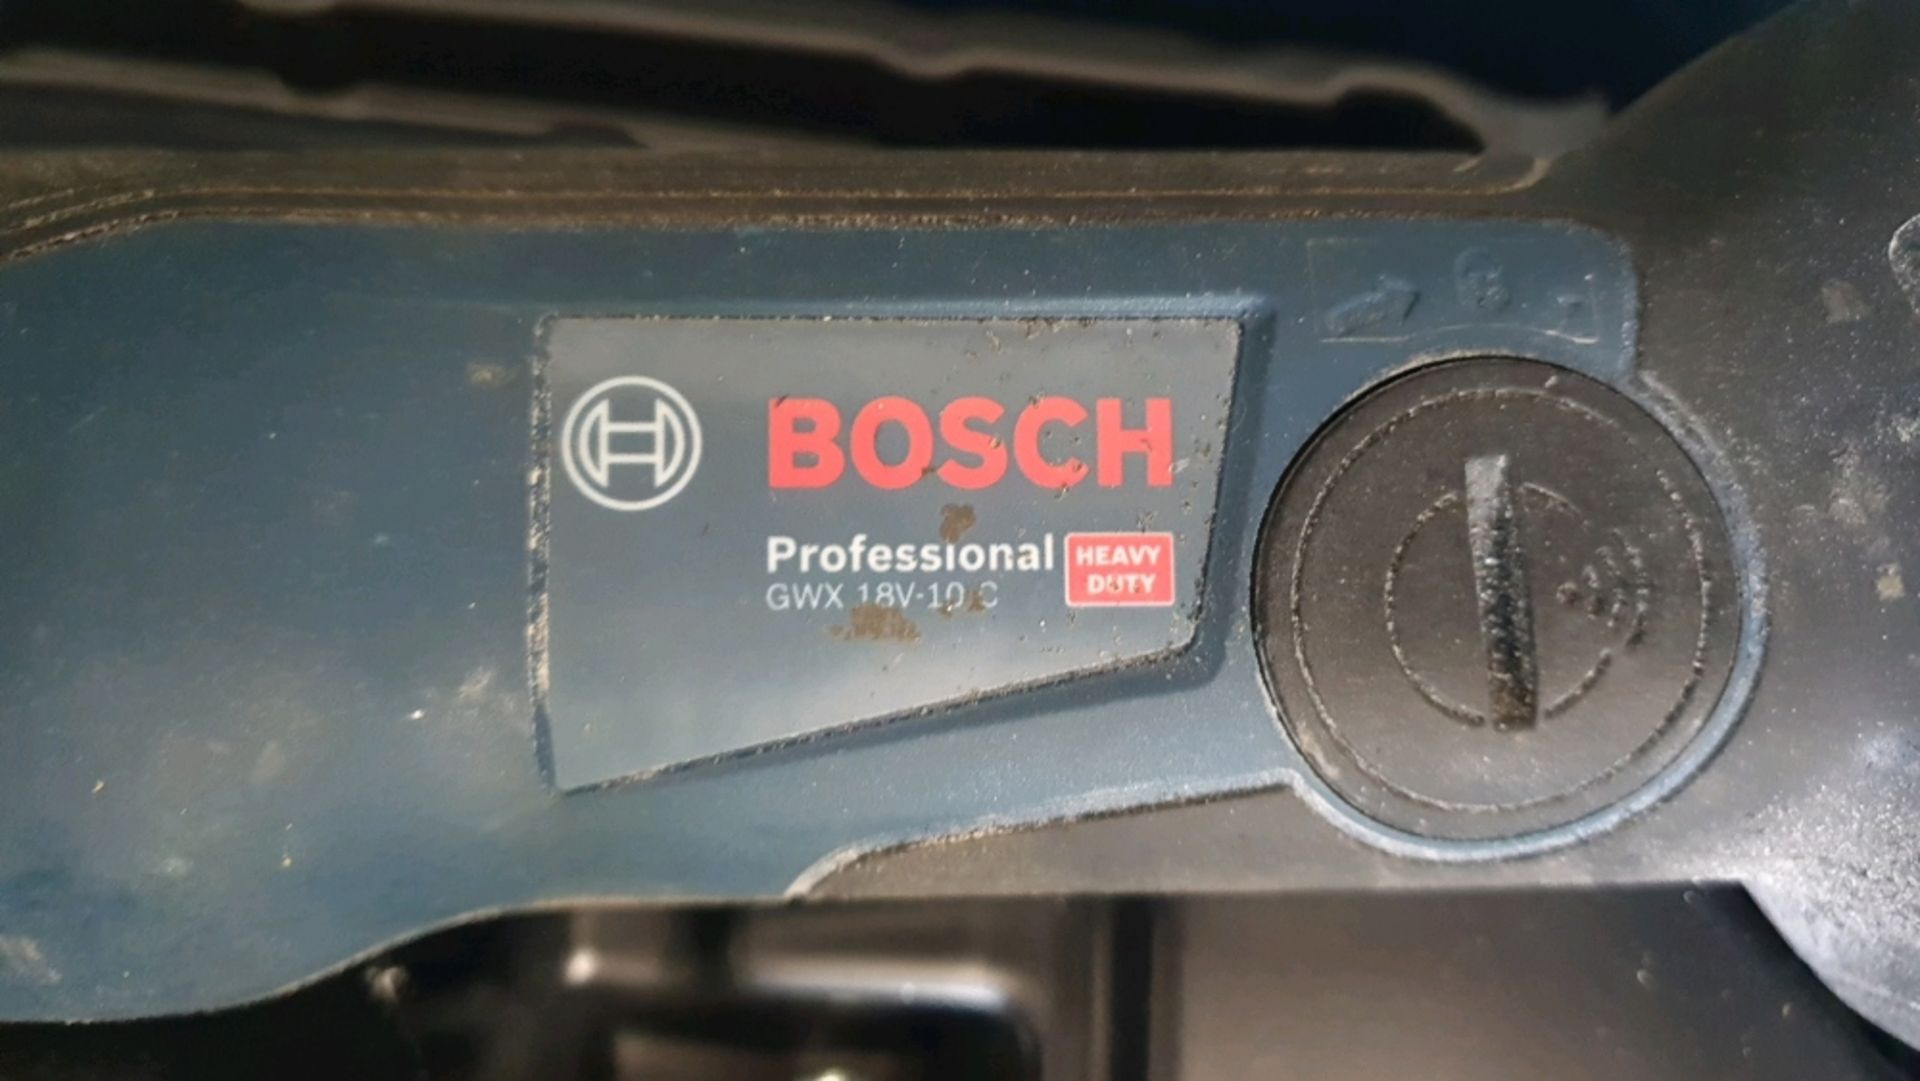 Bosch GWX 18V-10 C Angle Grinder - Image 5 of 6